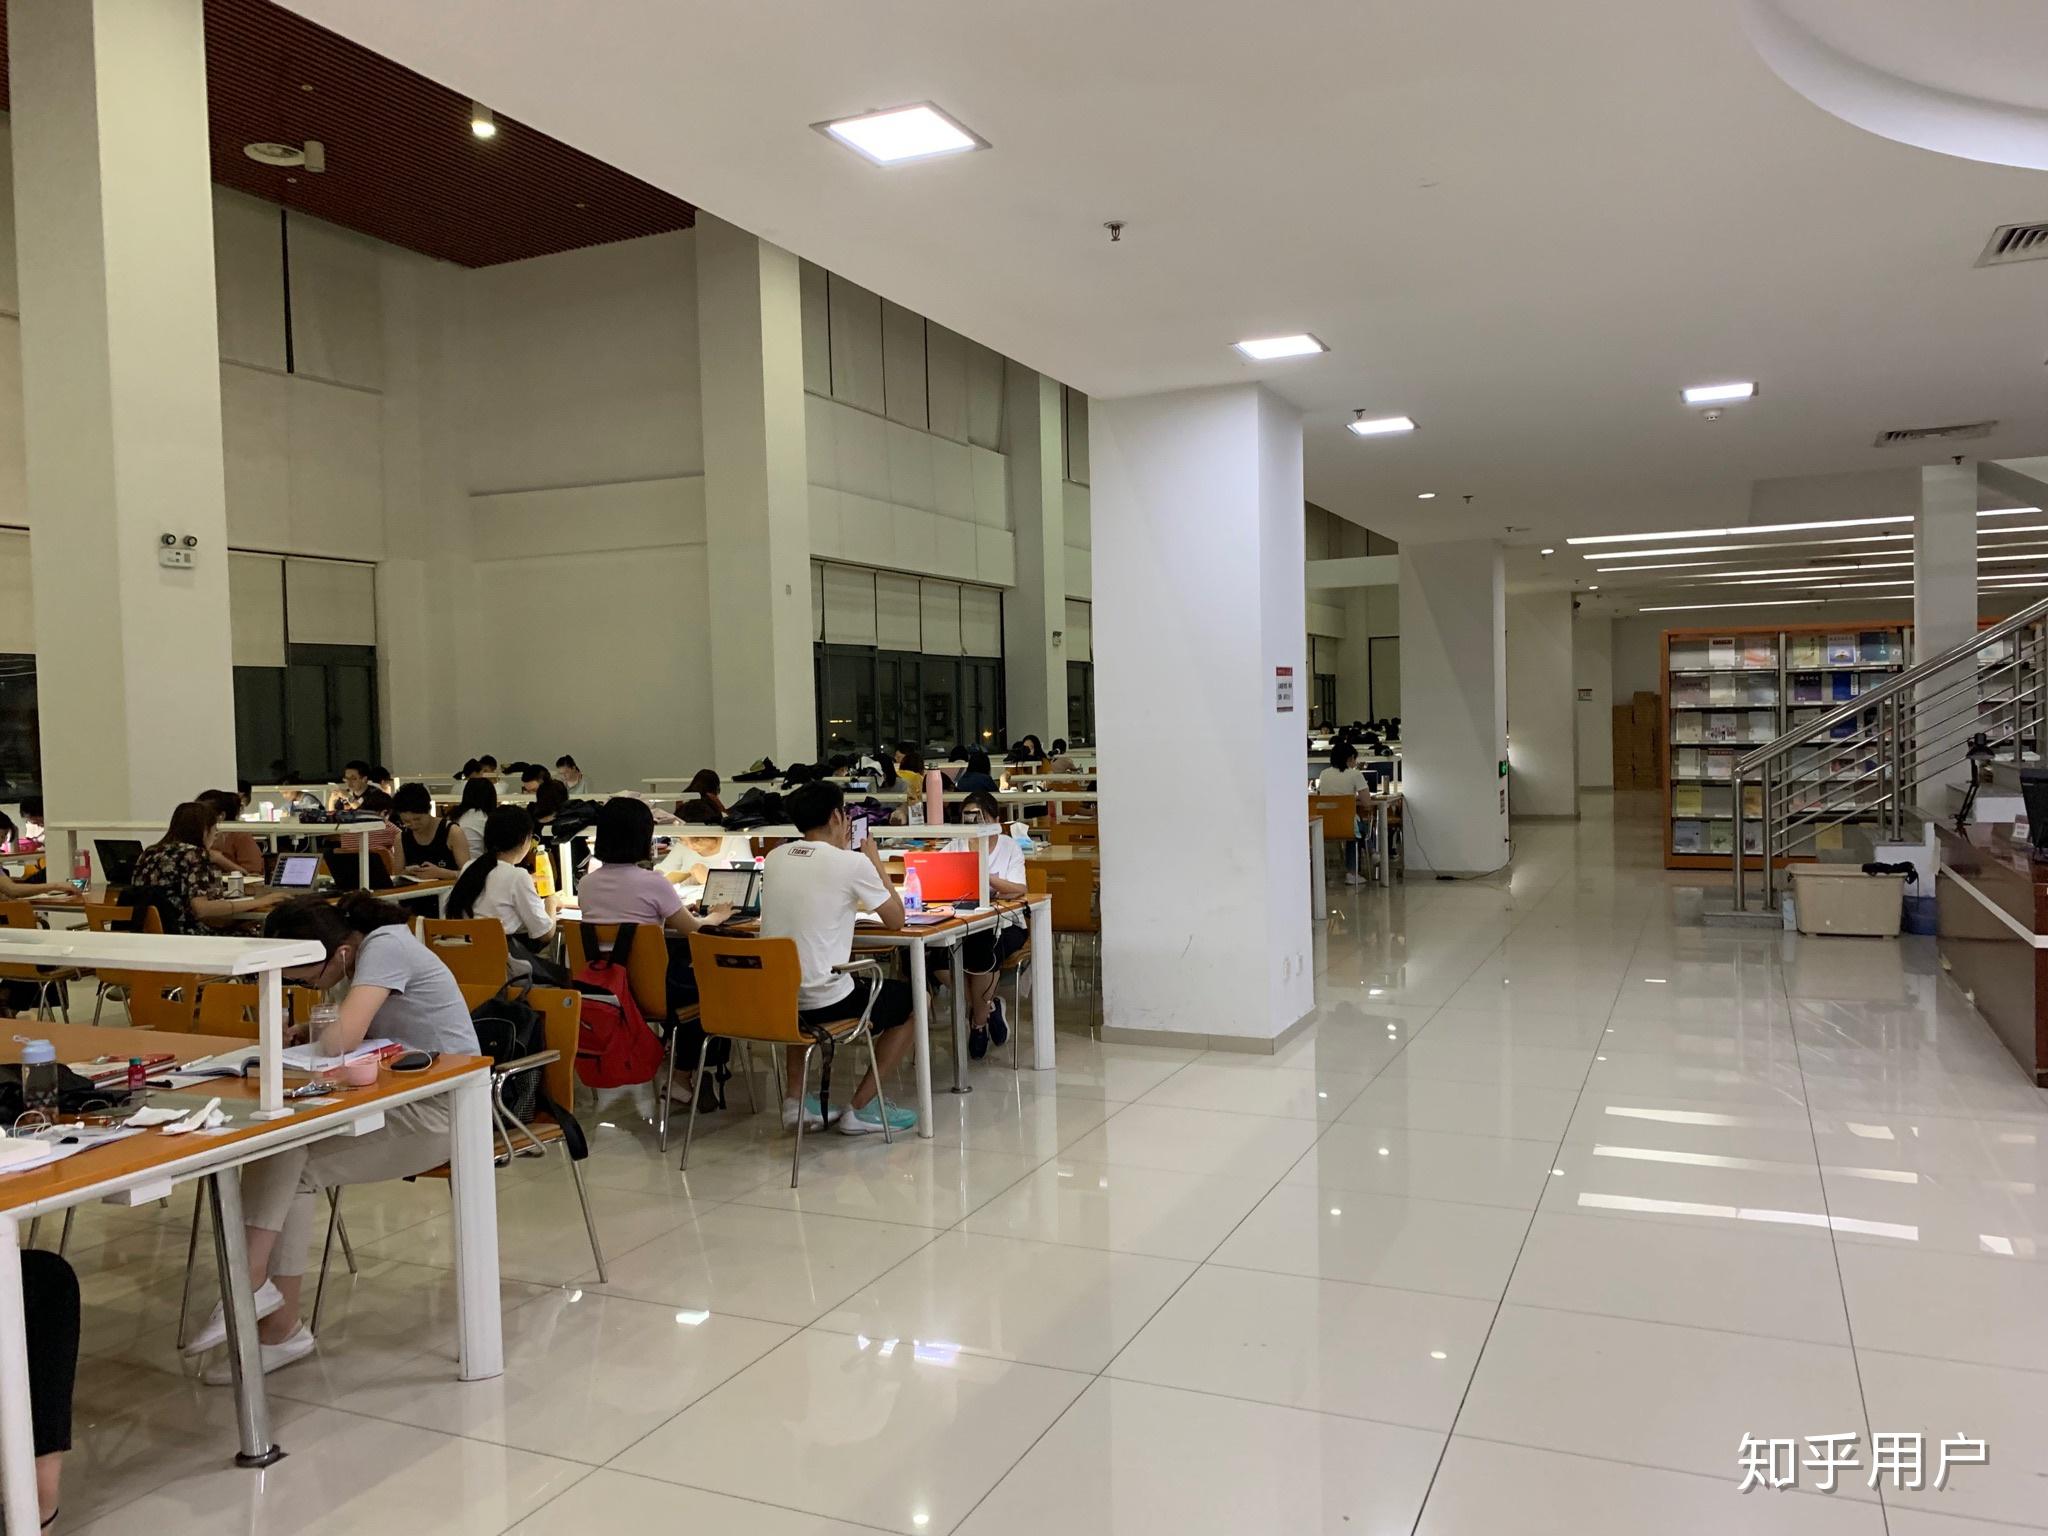 天津师范大学的图书馆或教室环境如何?是否适合上自习?